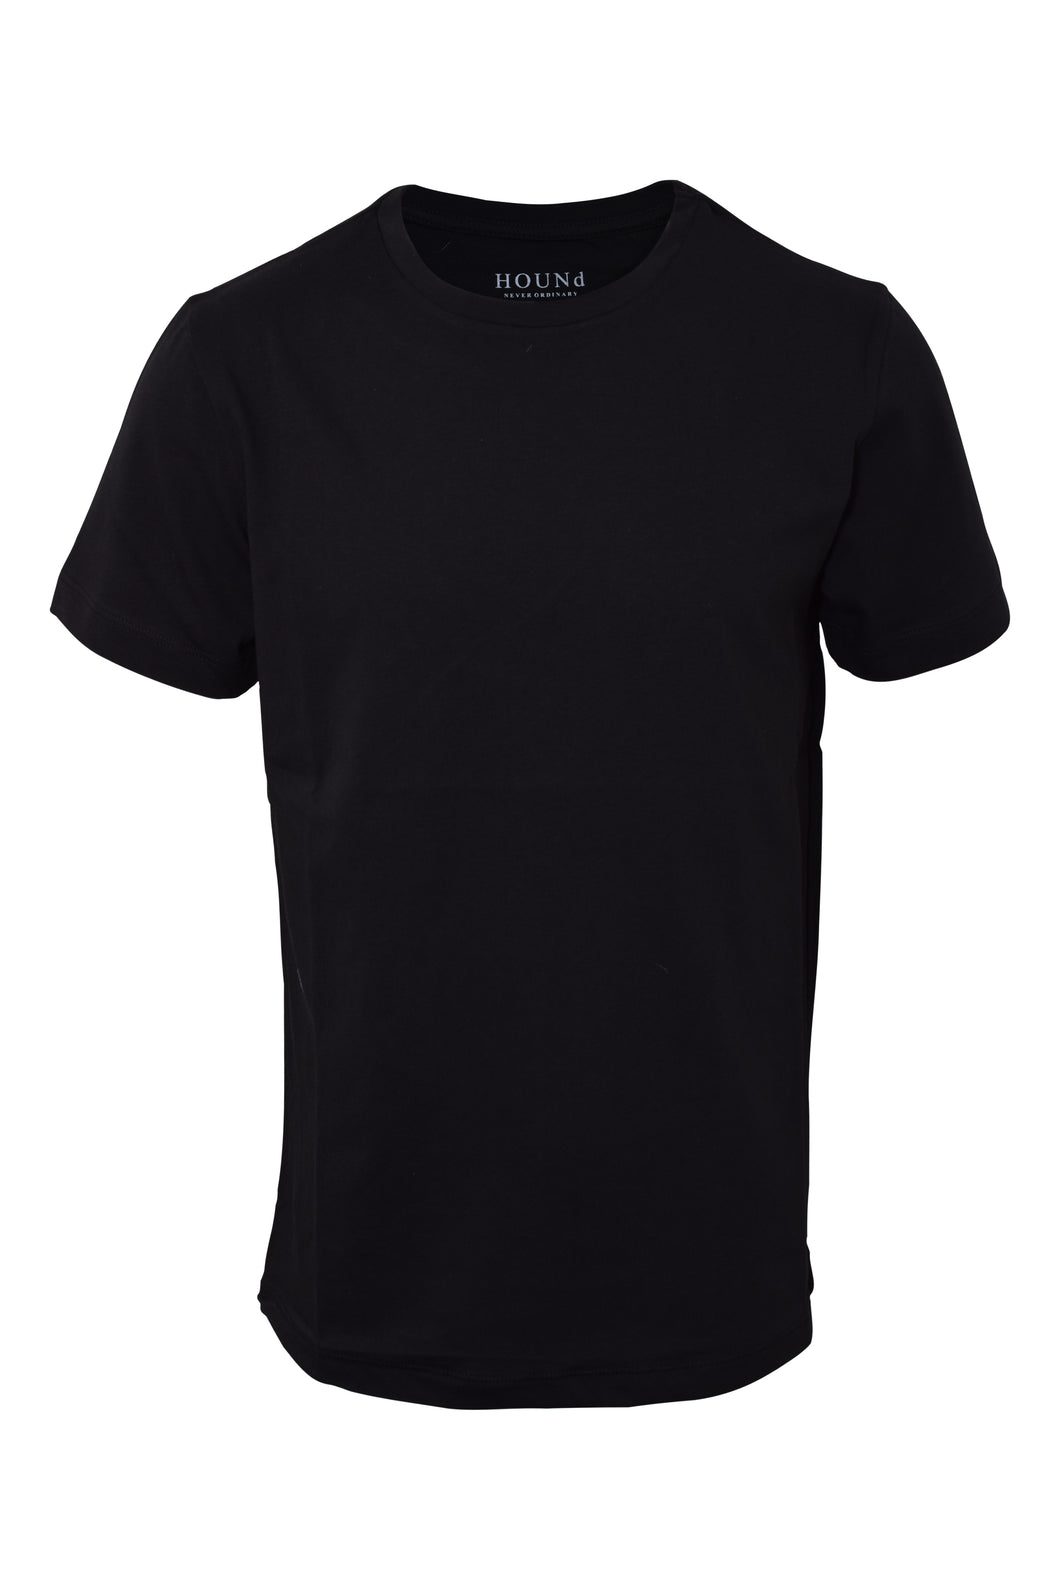 Hound 2990044 Basis T-Shirt 2990044 099 Black